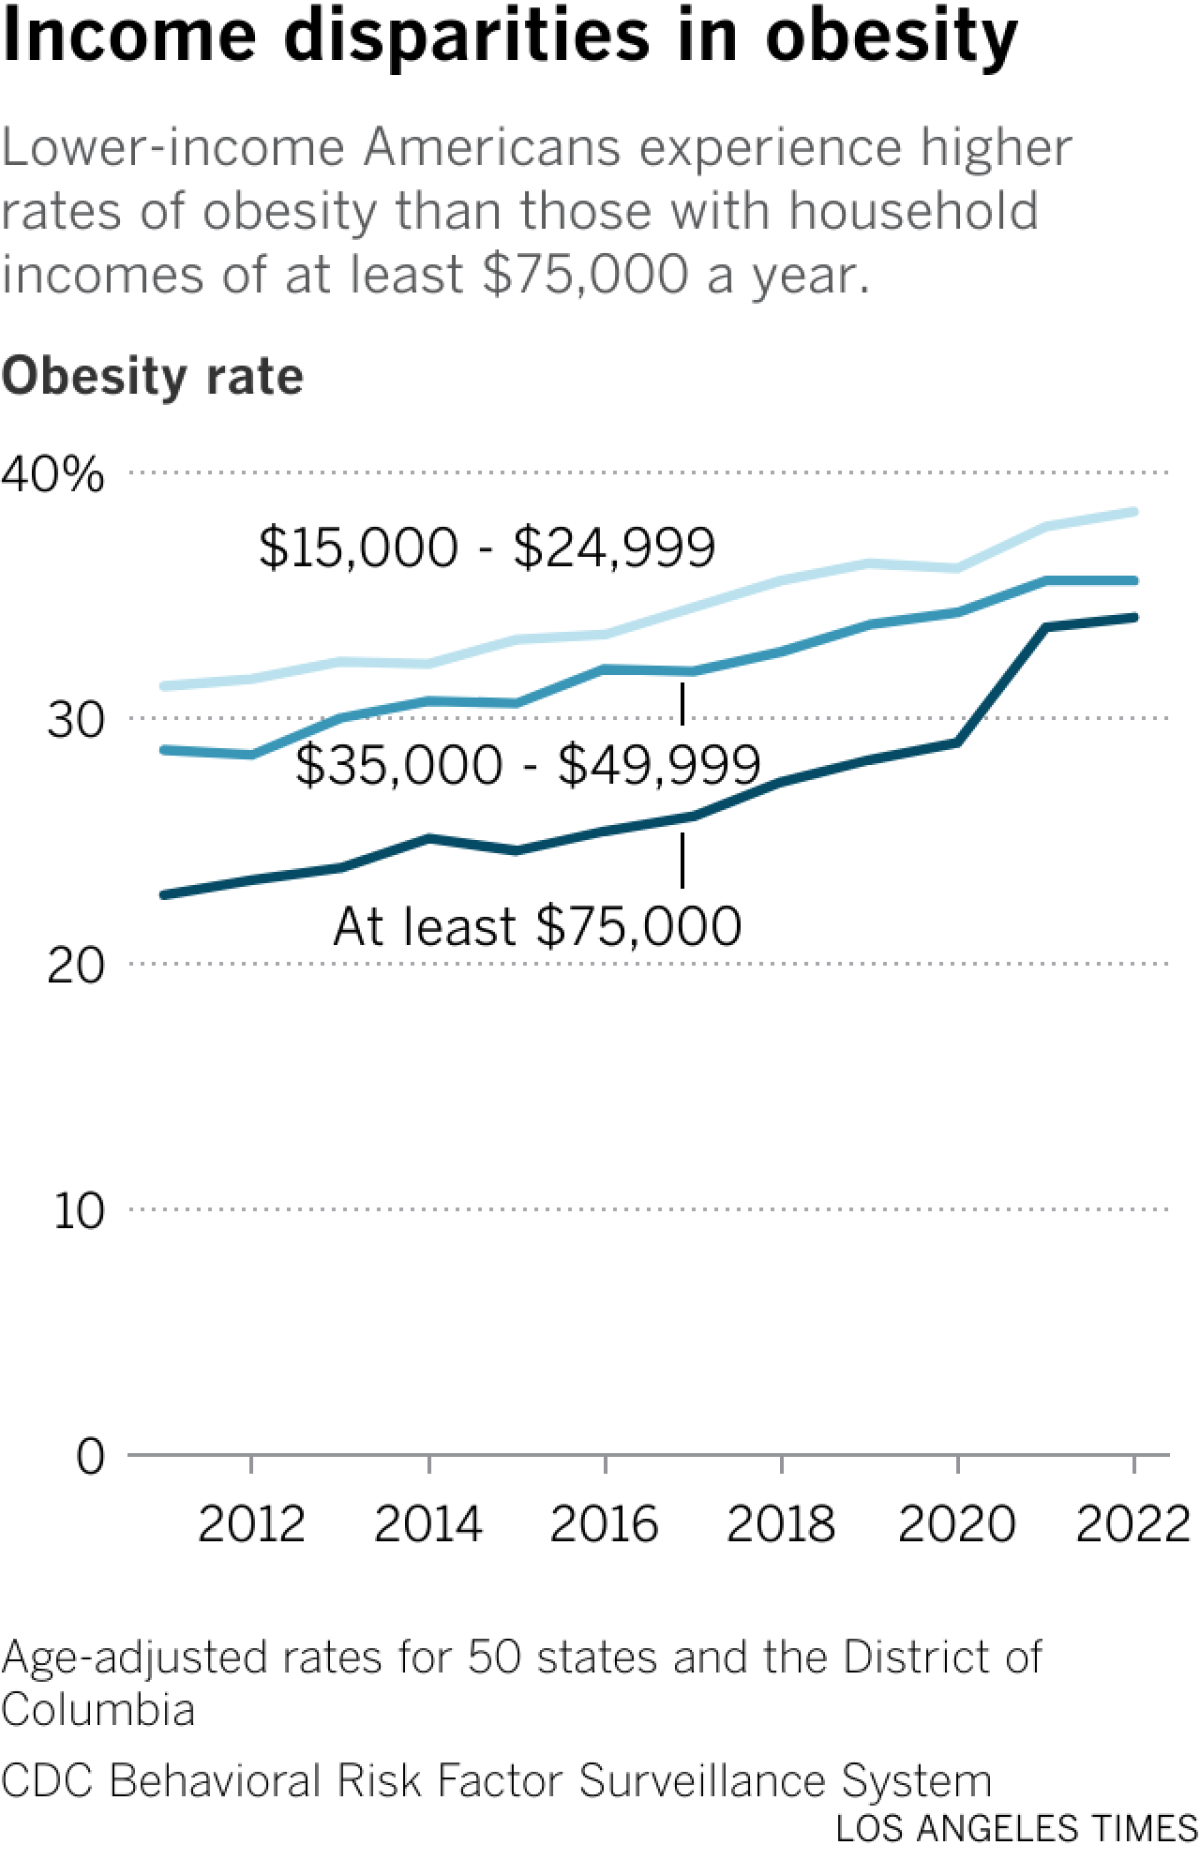 Le graphique linéaire montre les taux d'obésité dans trois catégories de revenus : 15 000 $ à 26 000 $, 35 000 $ à 50 000 $ et au moins 75 000 $.  Les taux sont plus élevés parmi les revenus les plus faibles, mais augmentent pour toutes les catégories.